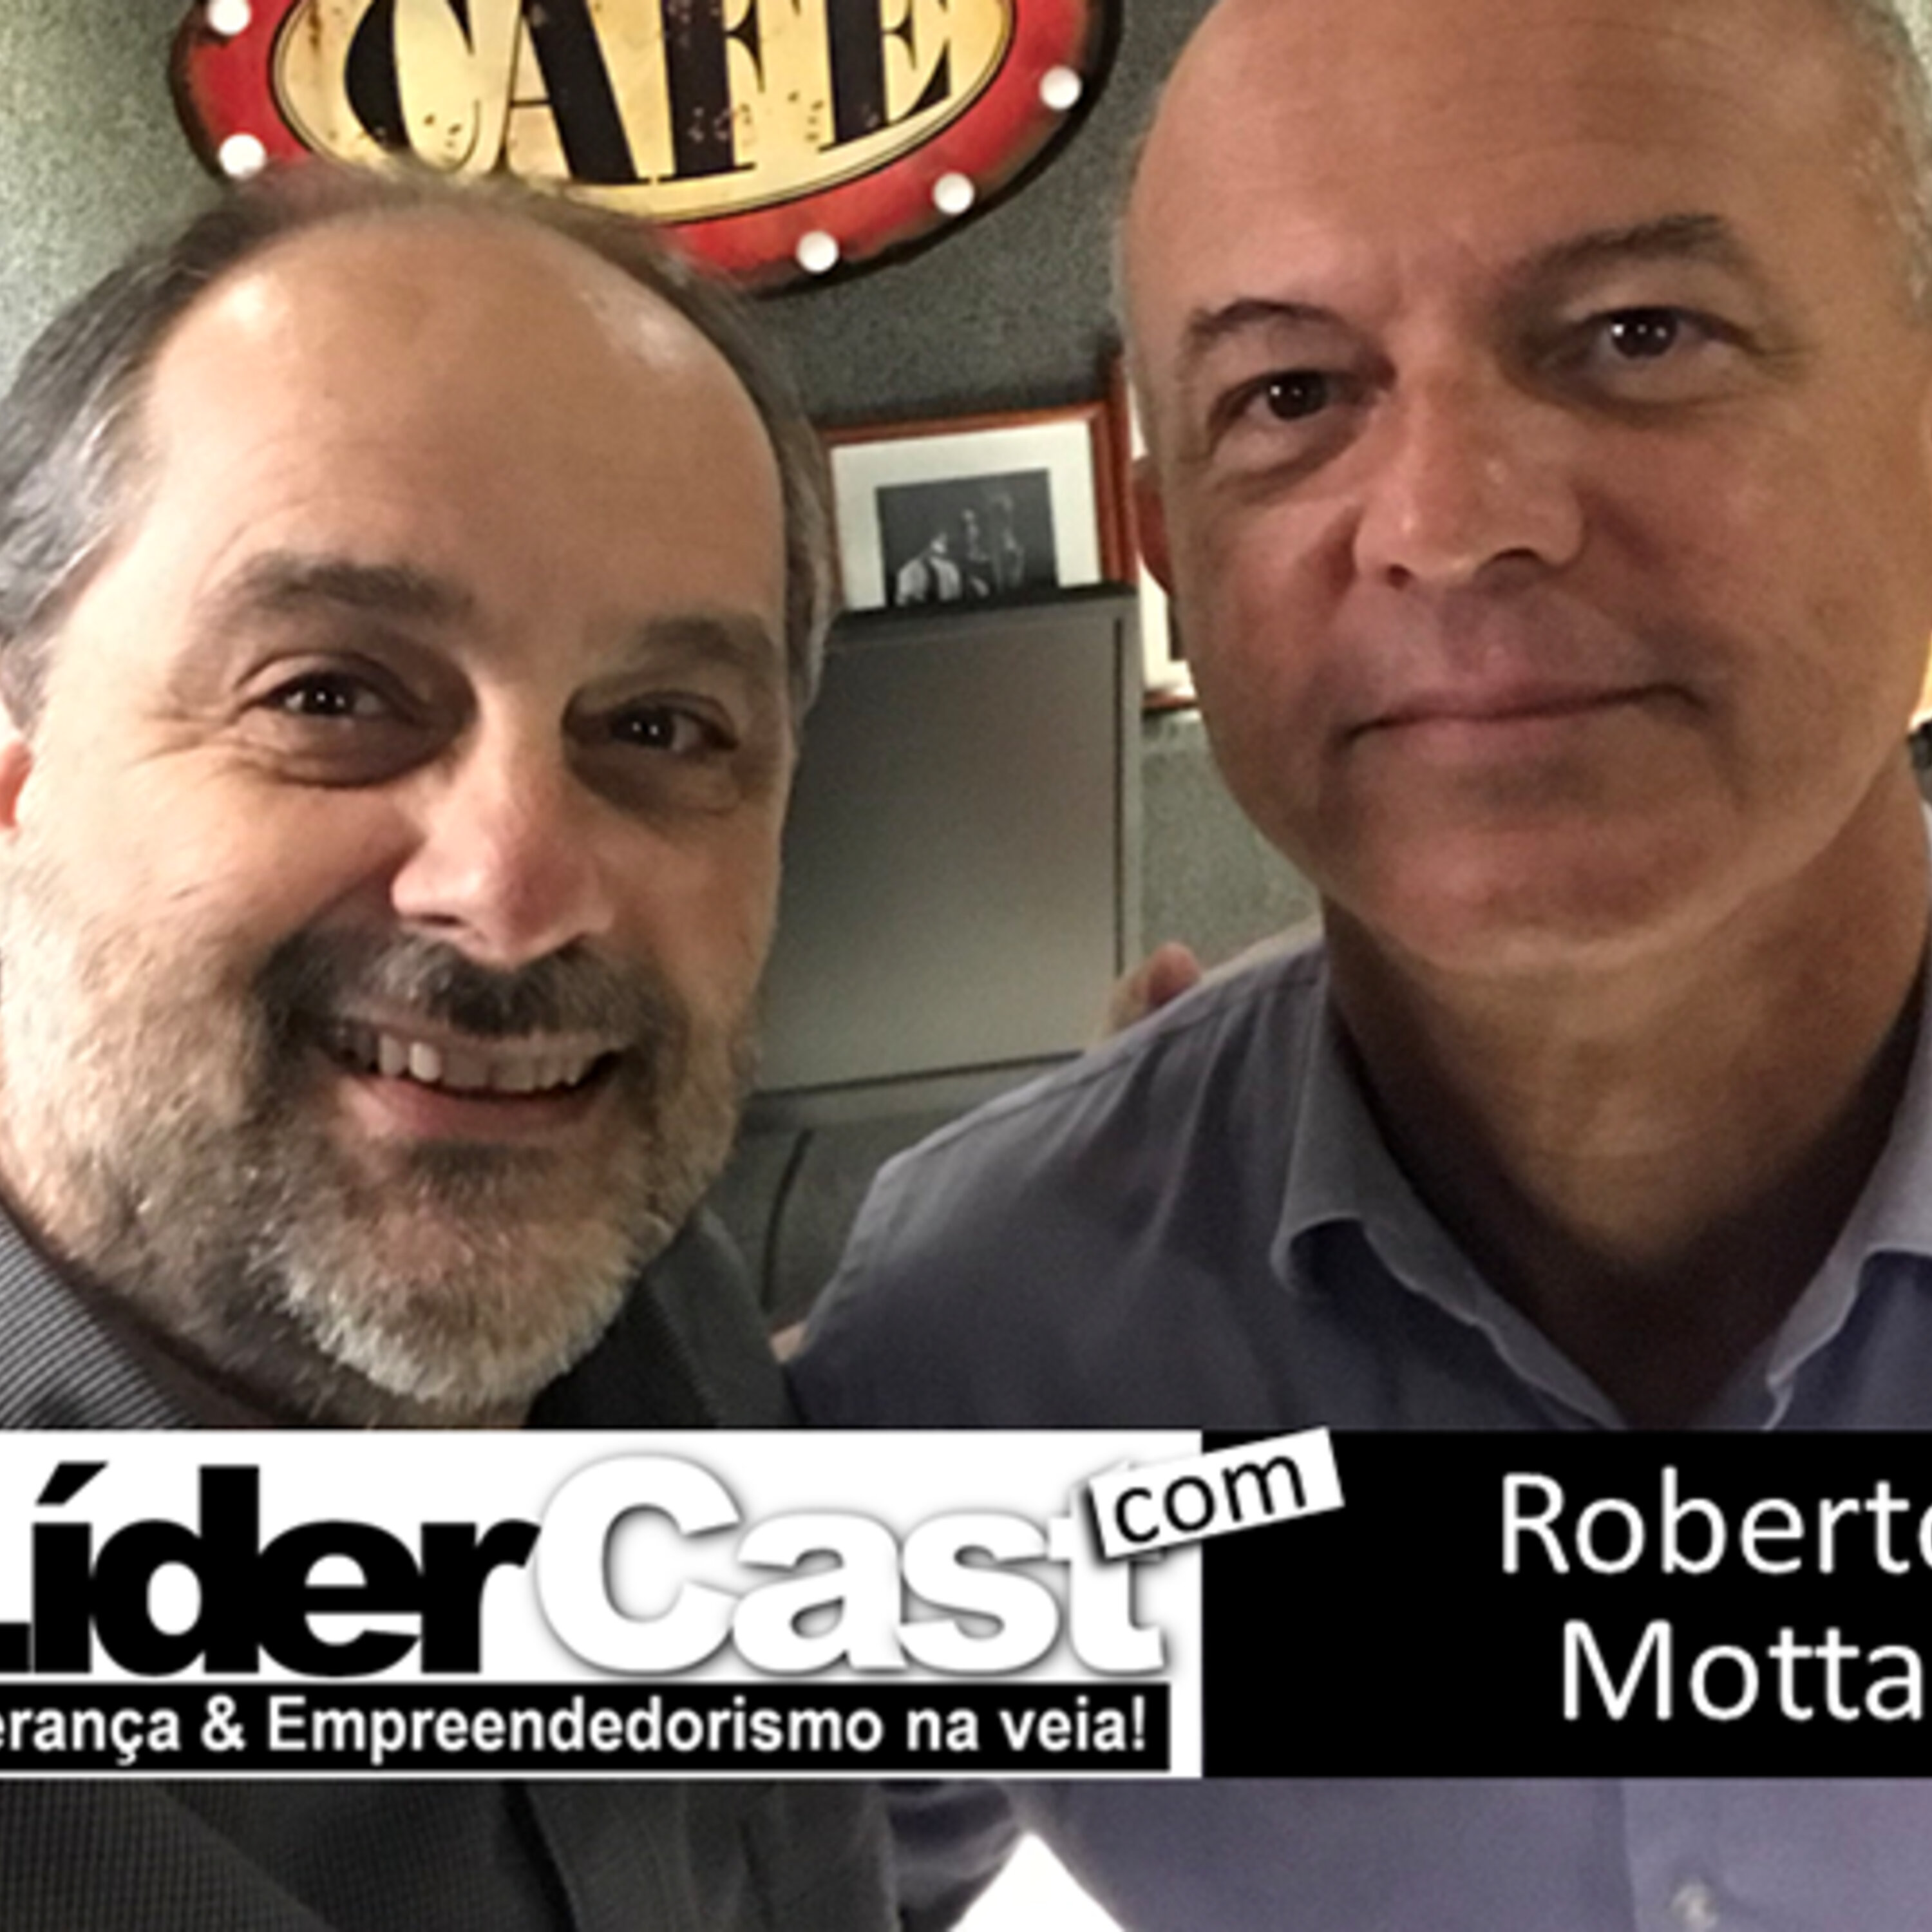 LíderCast 116 – Roberto Motta